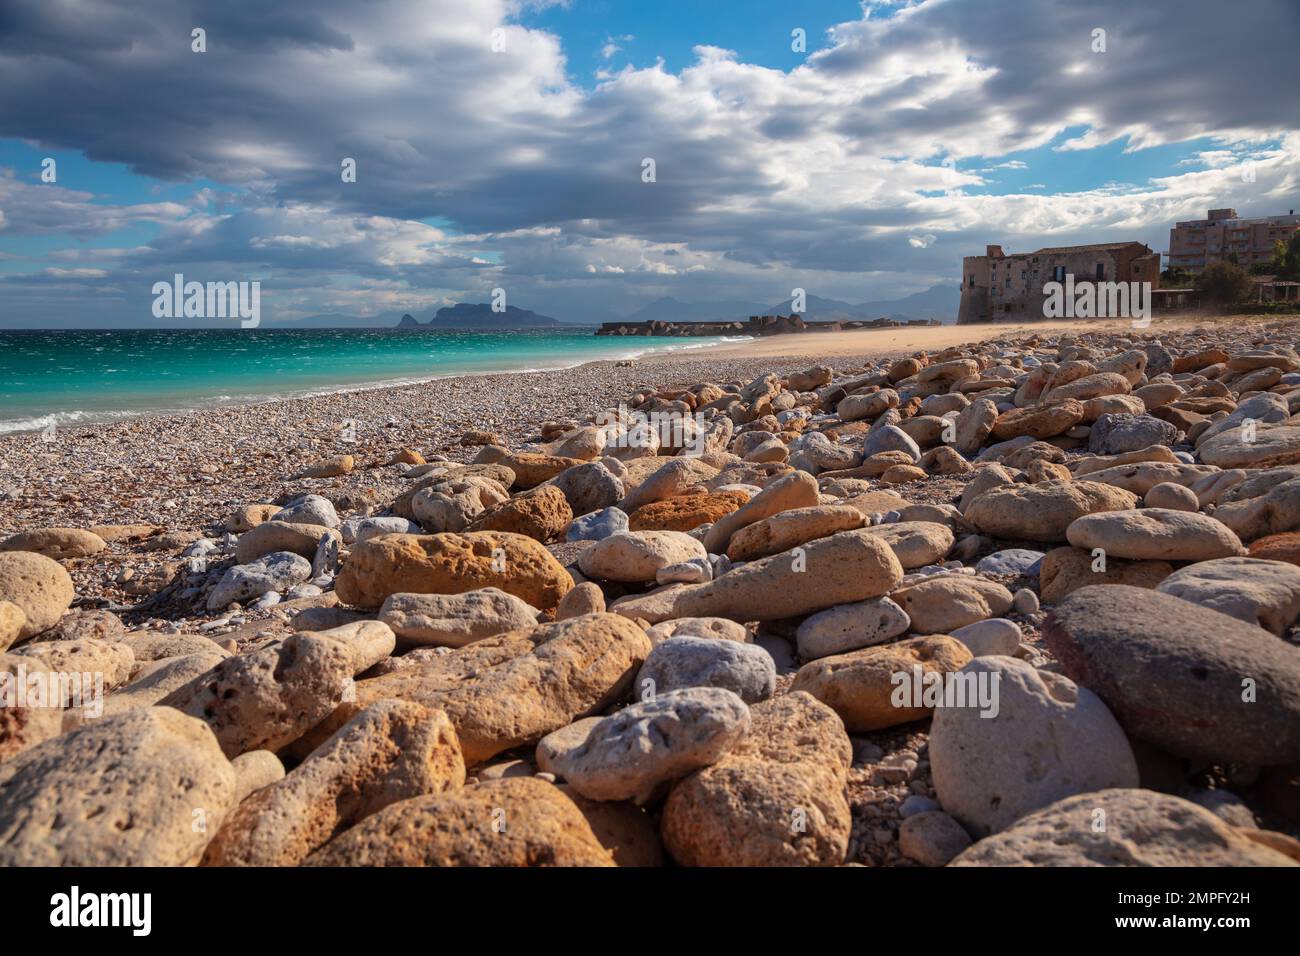 Virgin Mary Beach (Vergine Maria Beach), Sicile, Italie. Image paysage de la belle plage de Virgin Mary située près de Palerme, Sicile par beau soleil. Banque D'Images